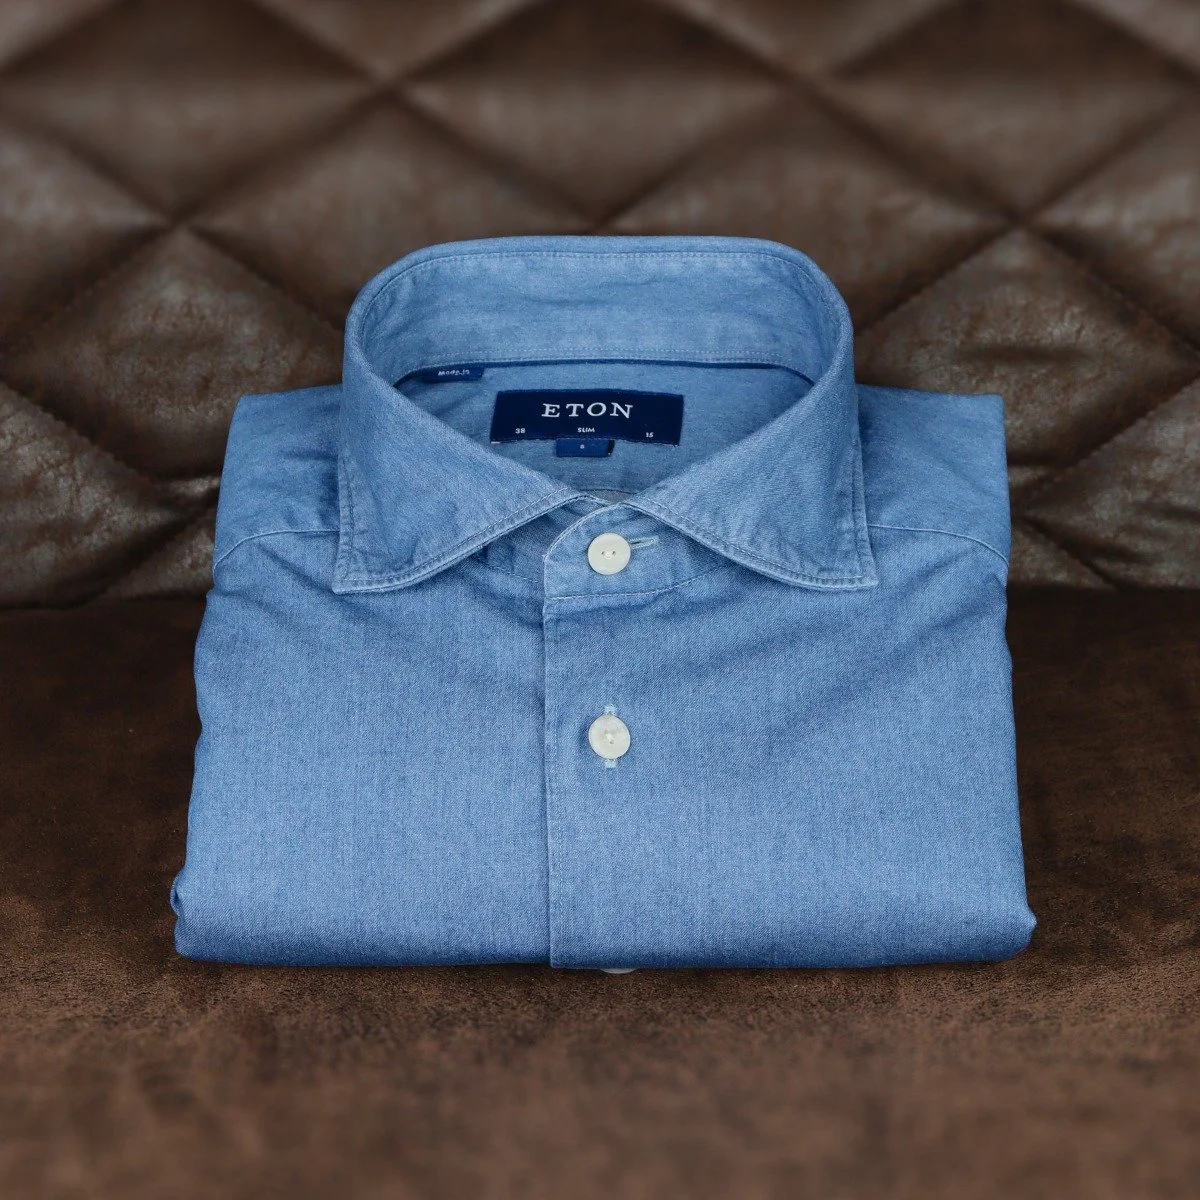 Blue lightweight denim shirt- top 5 men's dress shirts